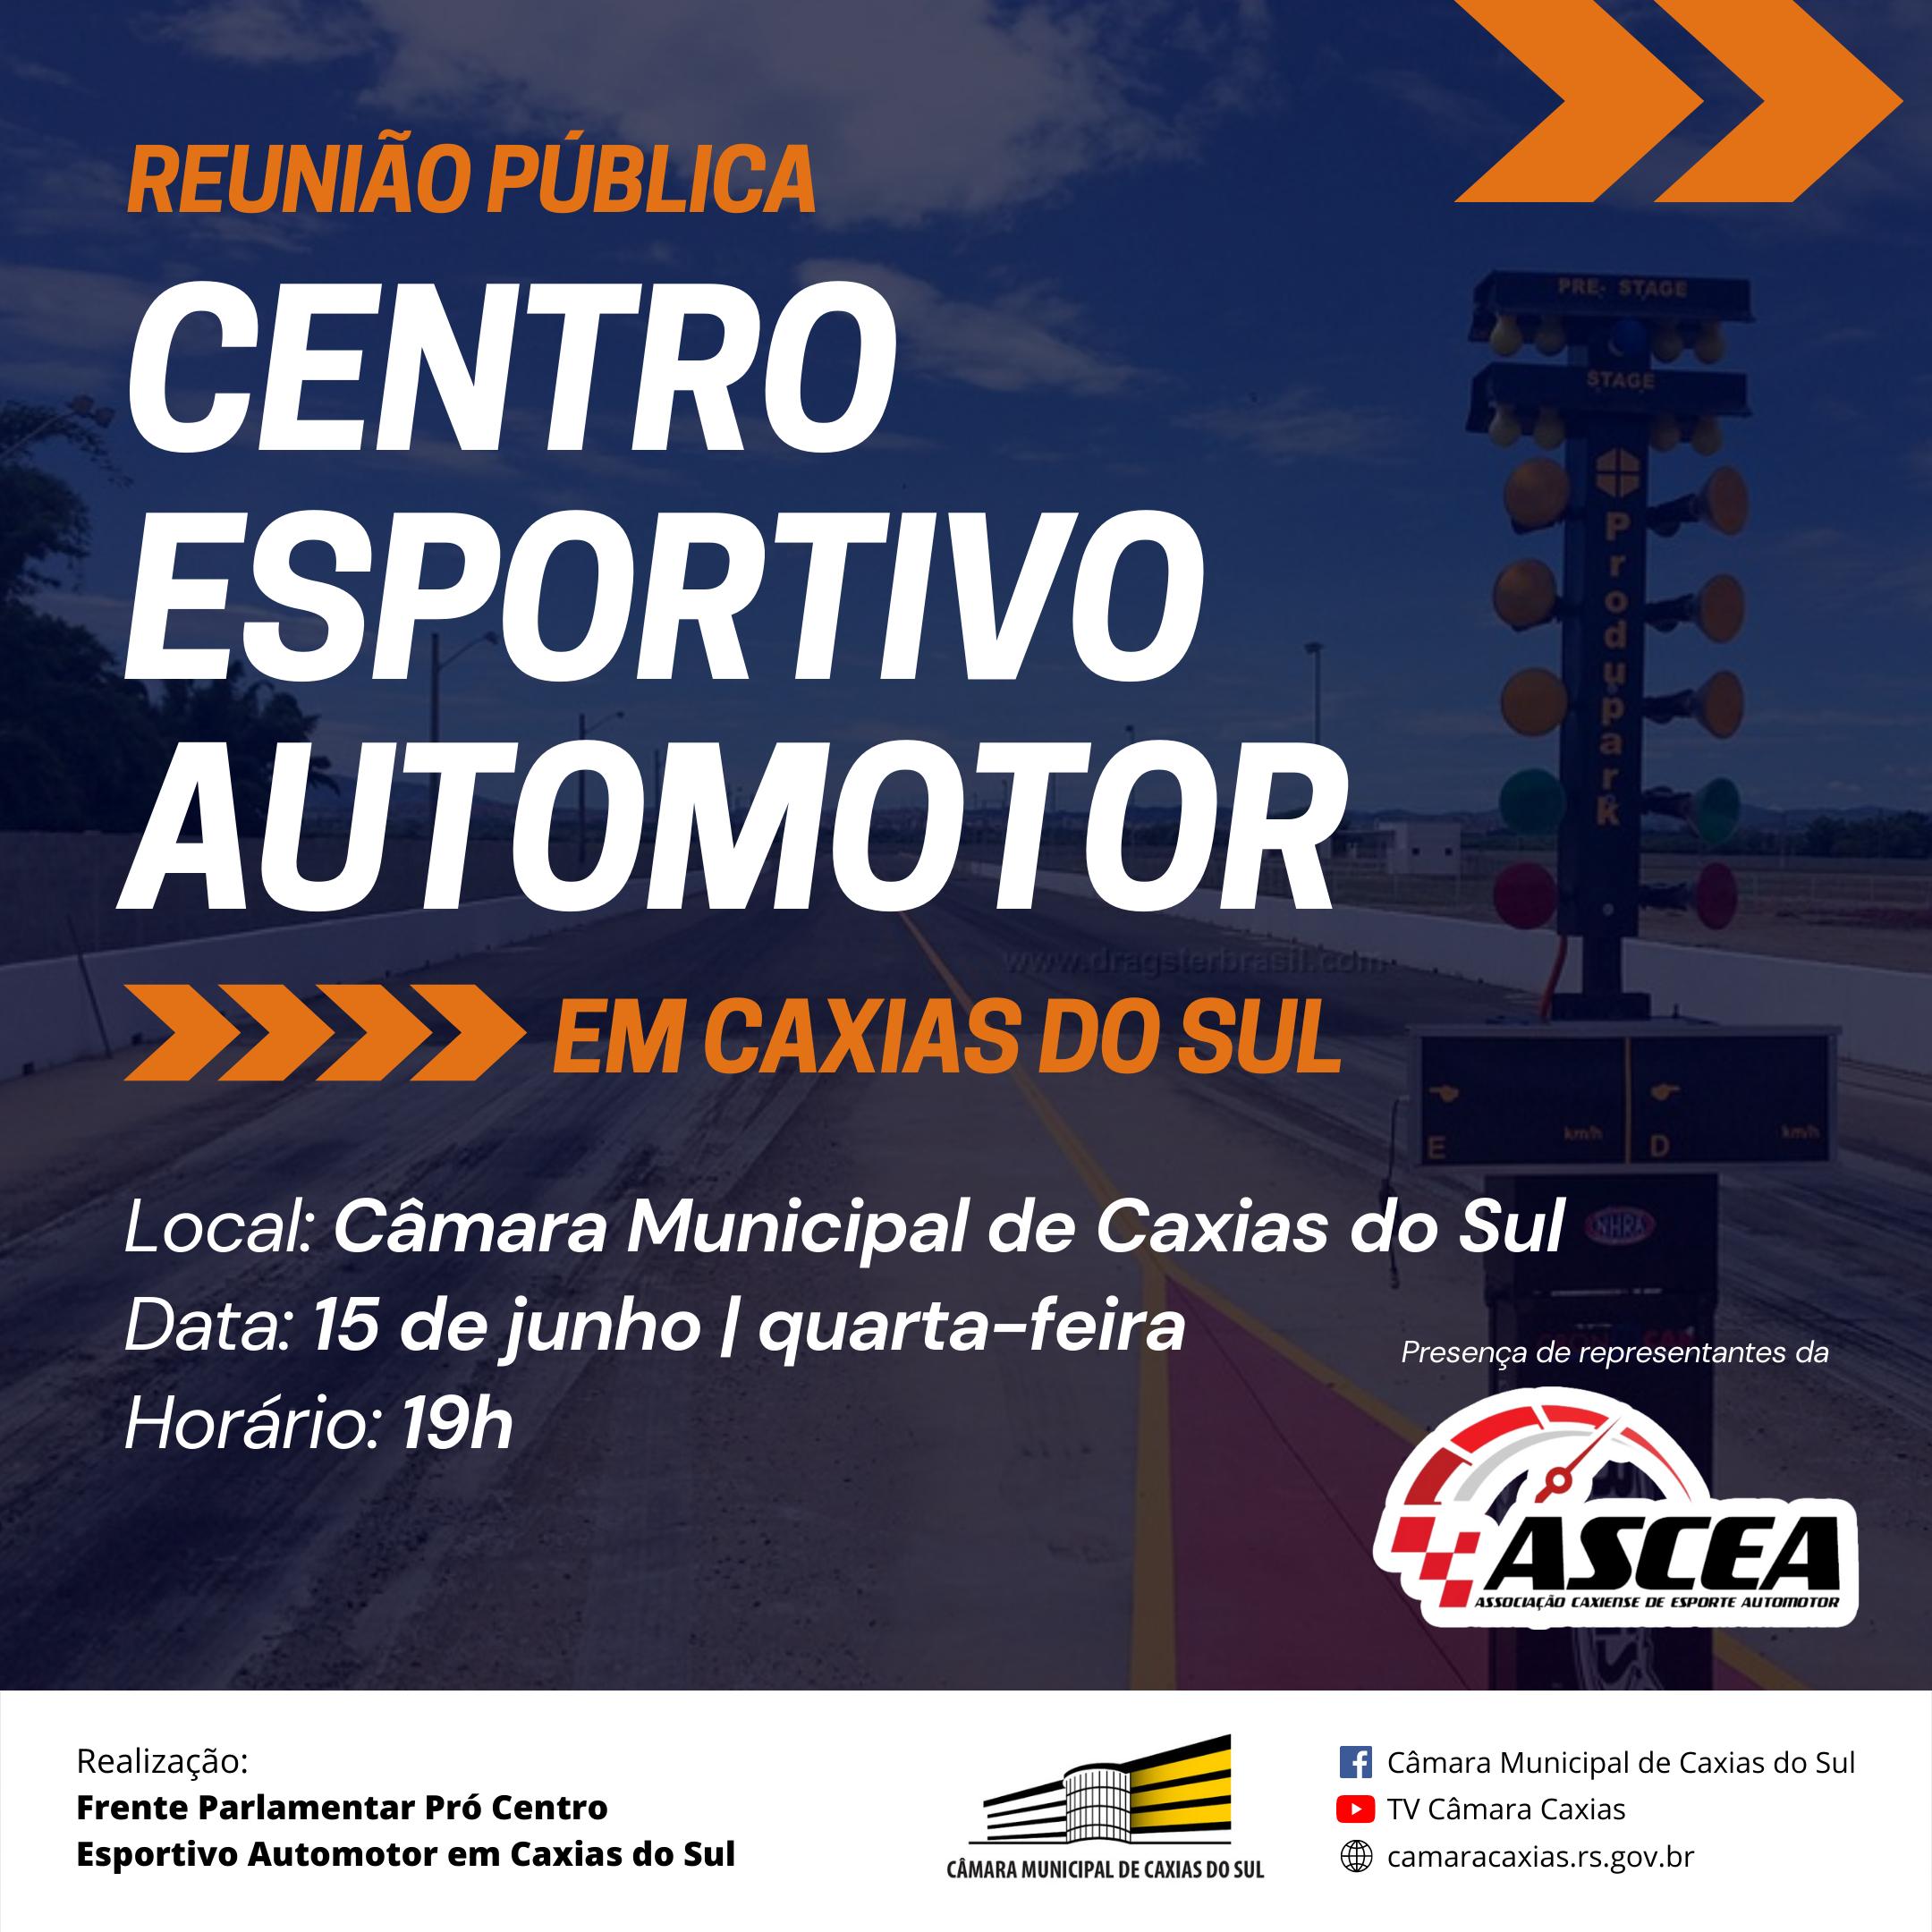 Frente Parlamentar promove reunião pública para debater Centro Esportivo Automotor em Caxias